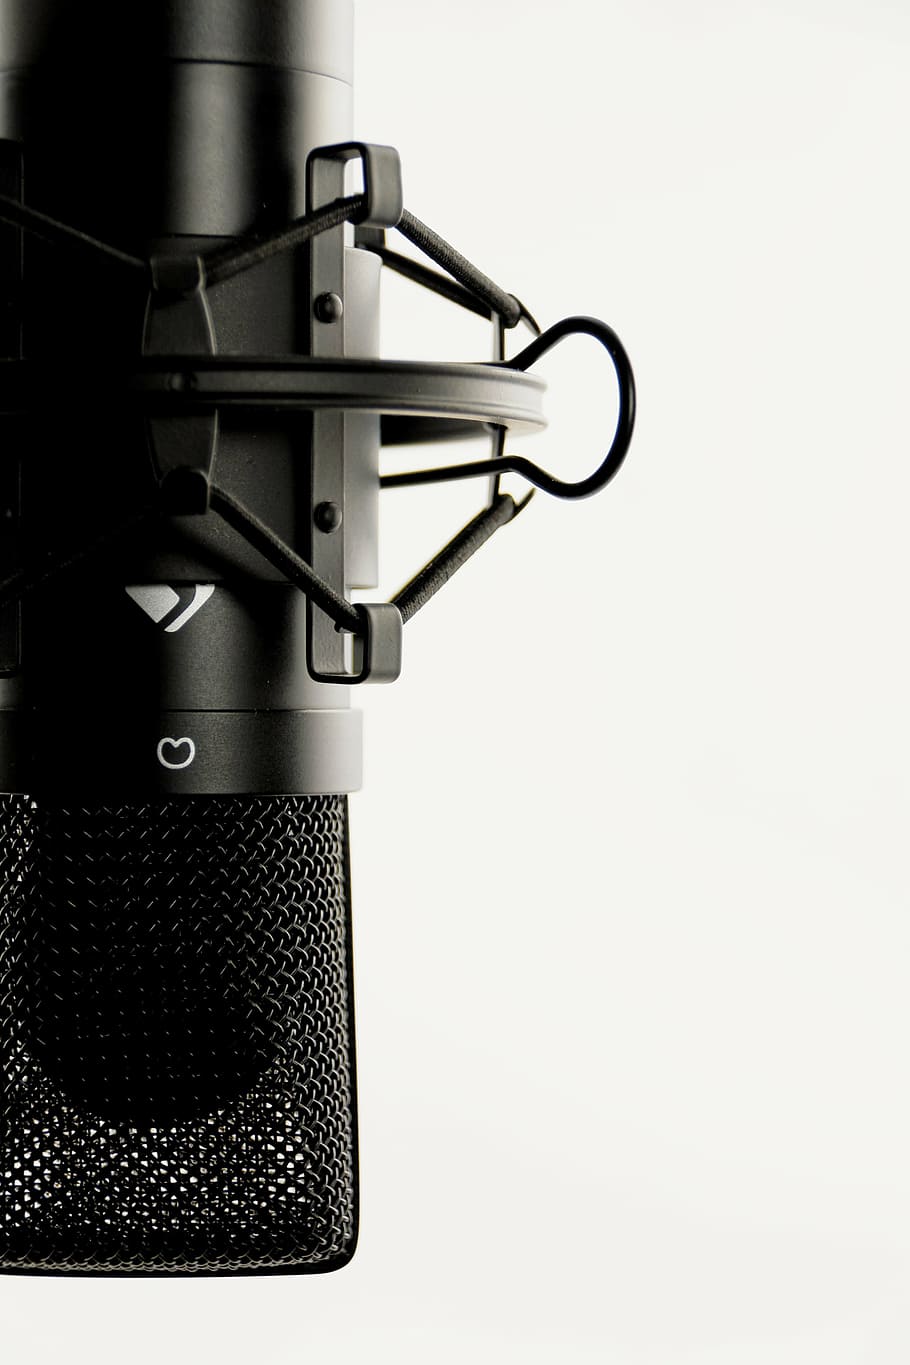 negro, micrófono de condensador, blanco, fondo, estudio, micrófono, micrófono vocal, audio, grabación, estudio de sonido